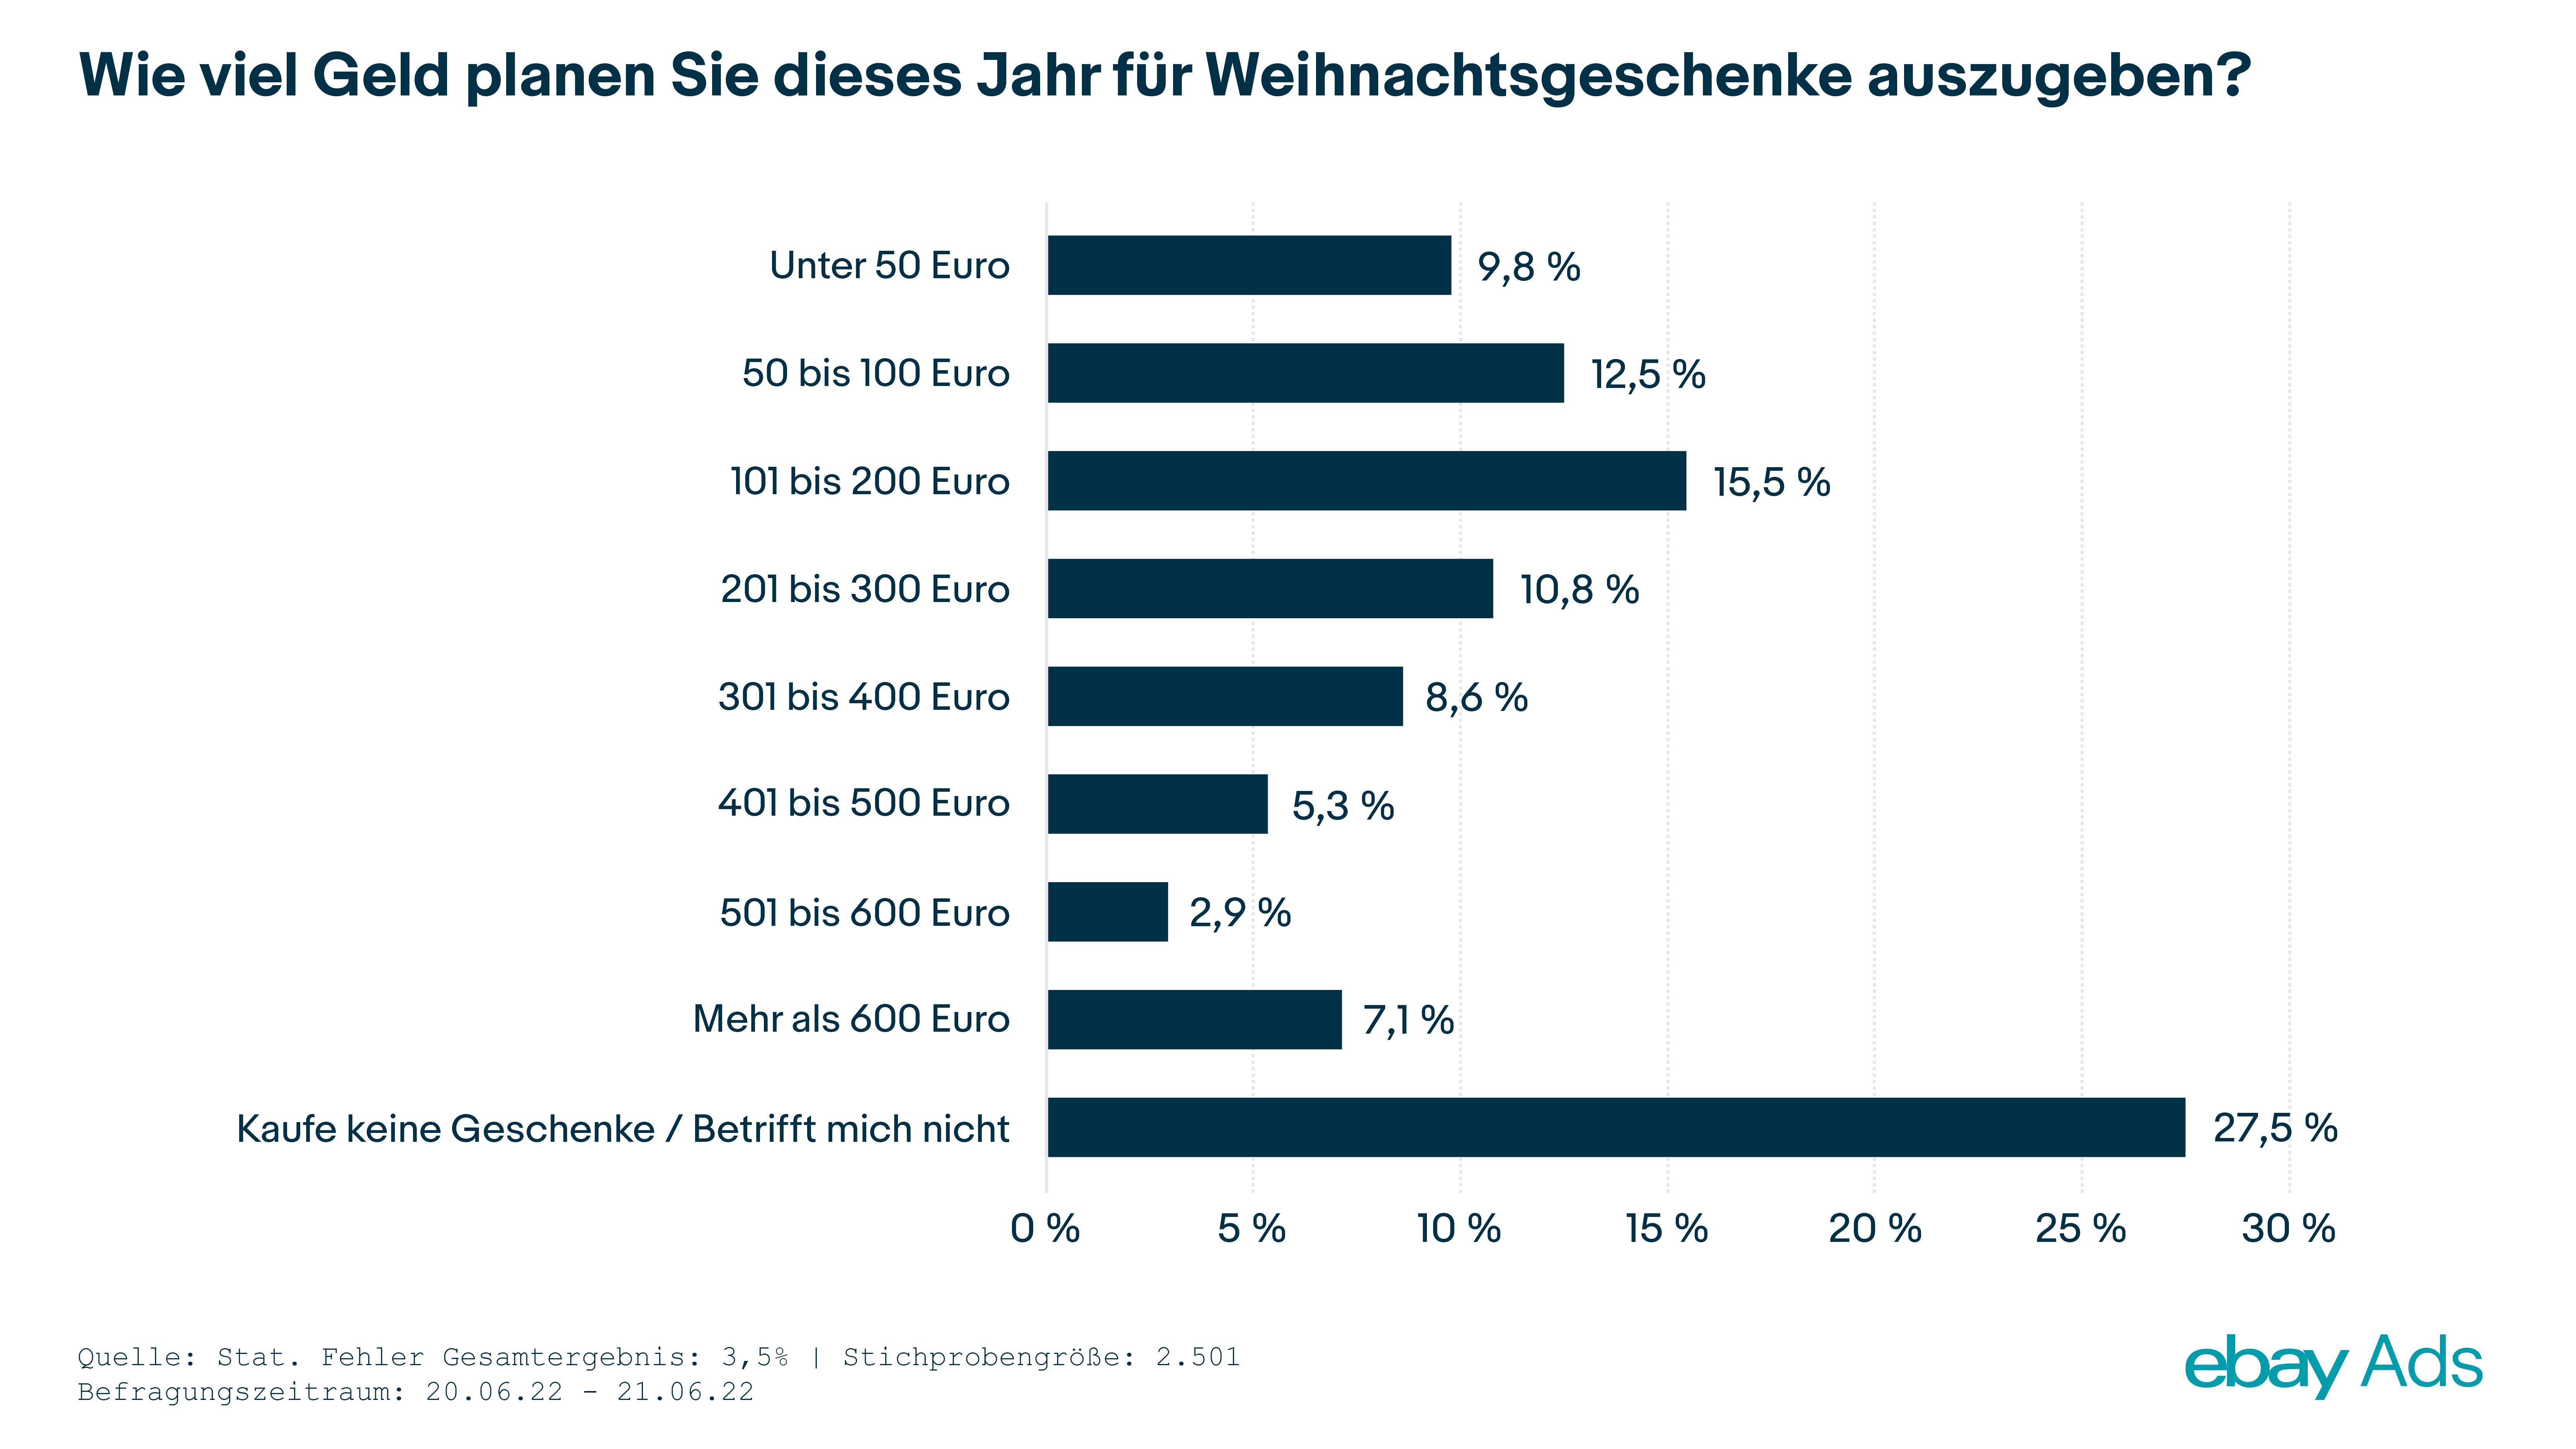 Das Weihnachtsbudget der Deutschen sinkt im Jahresvergleich signifikant - Quelle: Ebay Ads